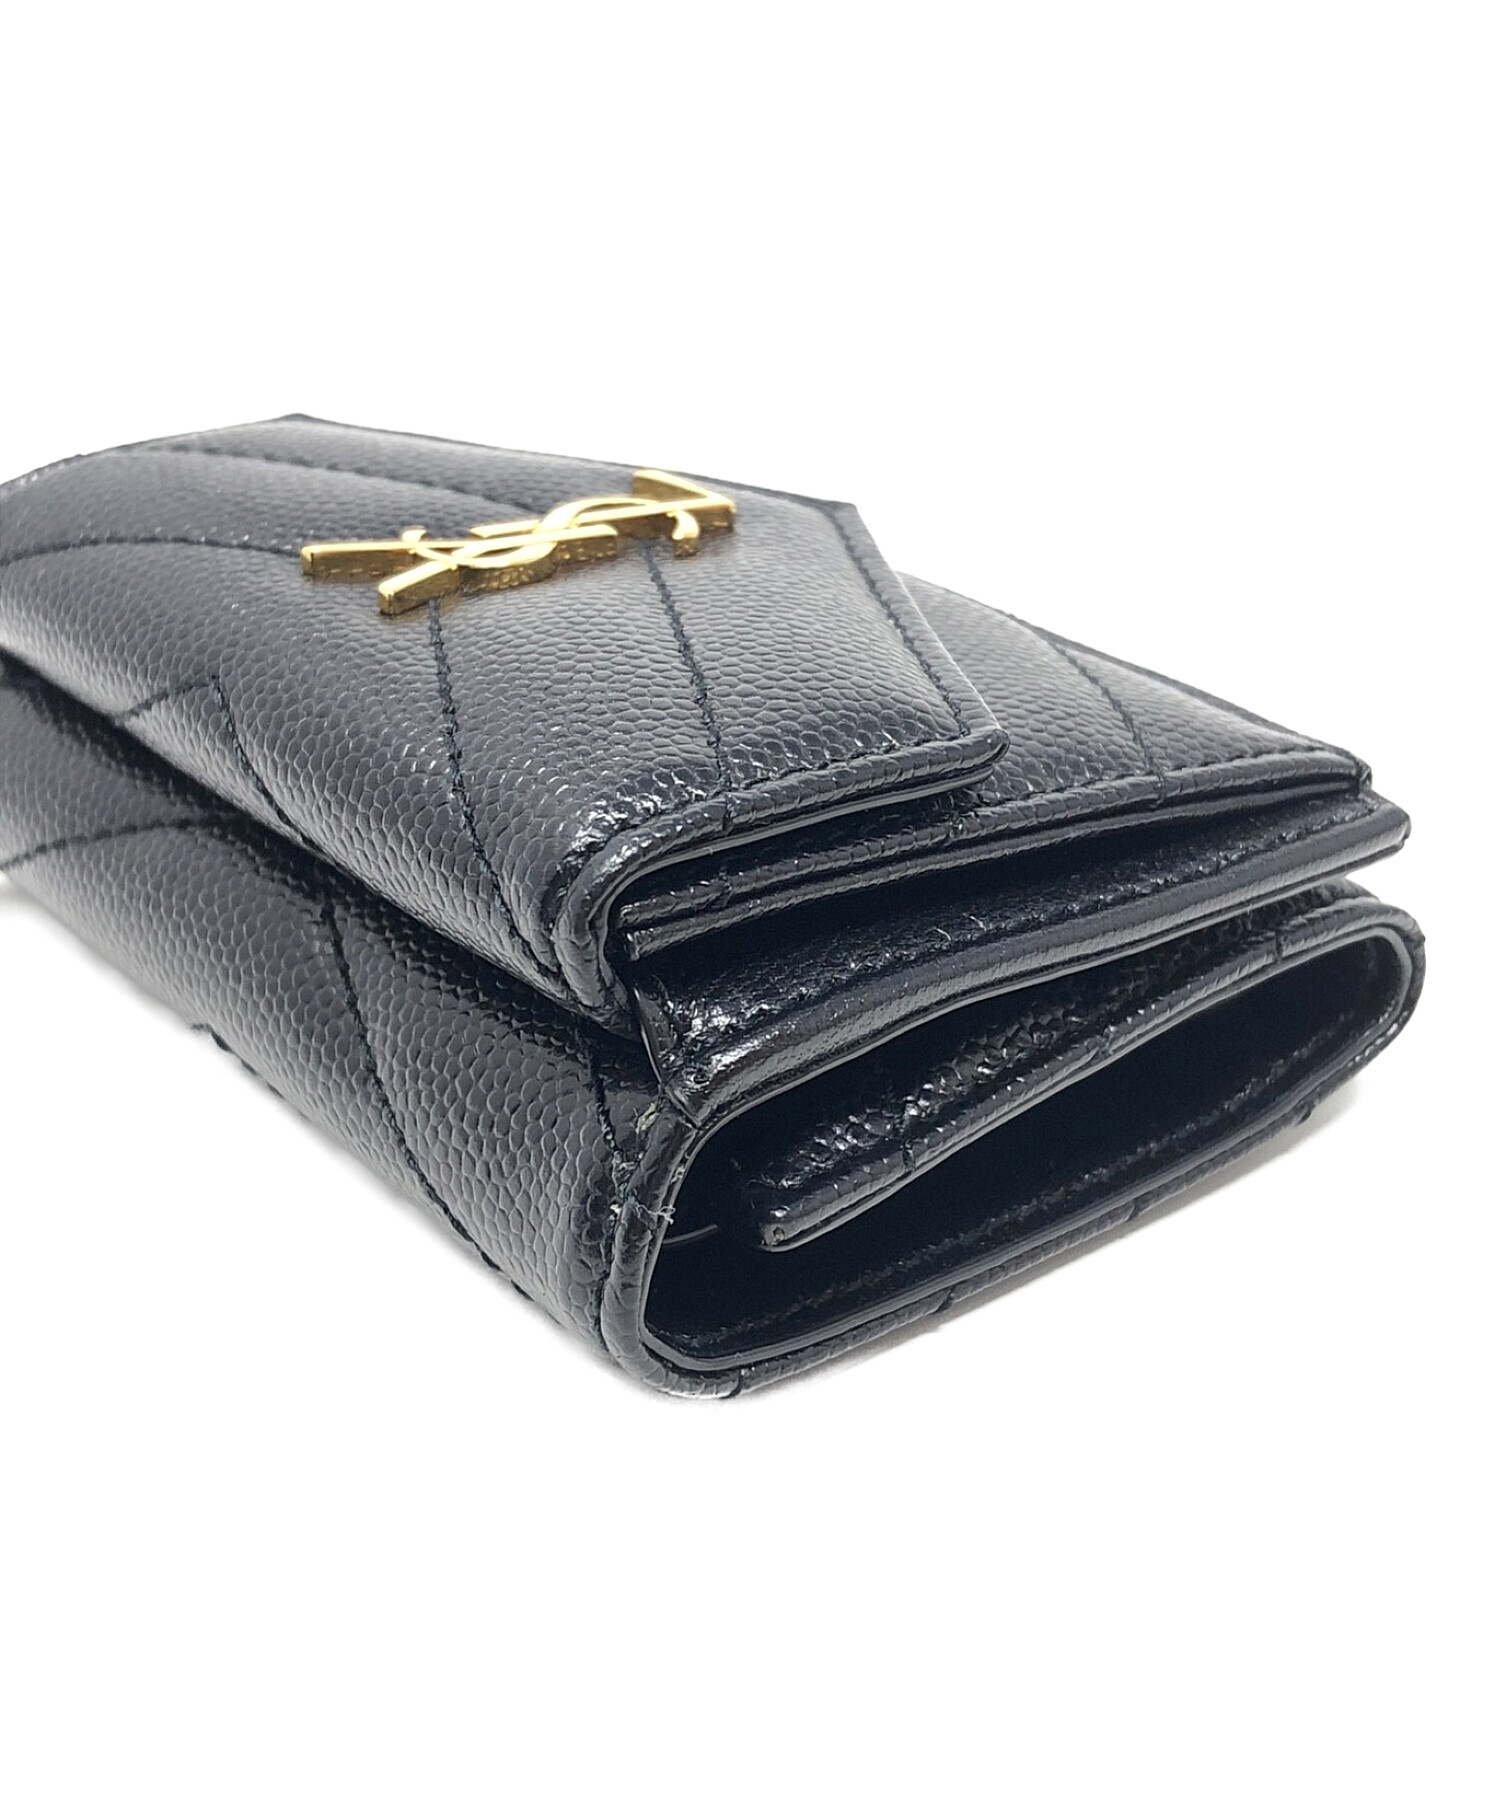 Saint Laurent Paris (サンローランパリ) 3つ折り財布 モノグラム コンパクトウォレット ブラック  サイズ:実寸サイズにてご確認ください。